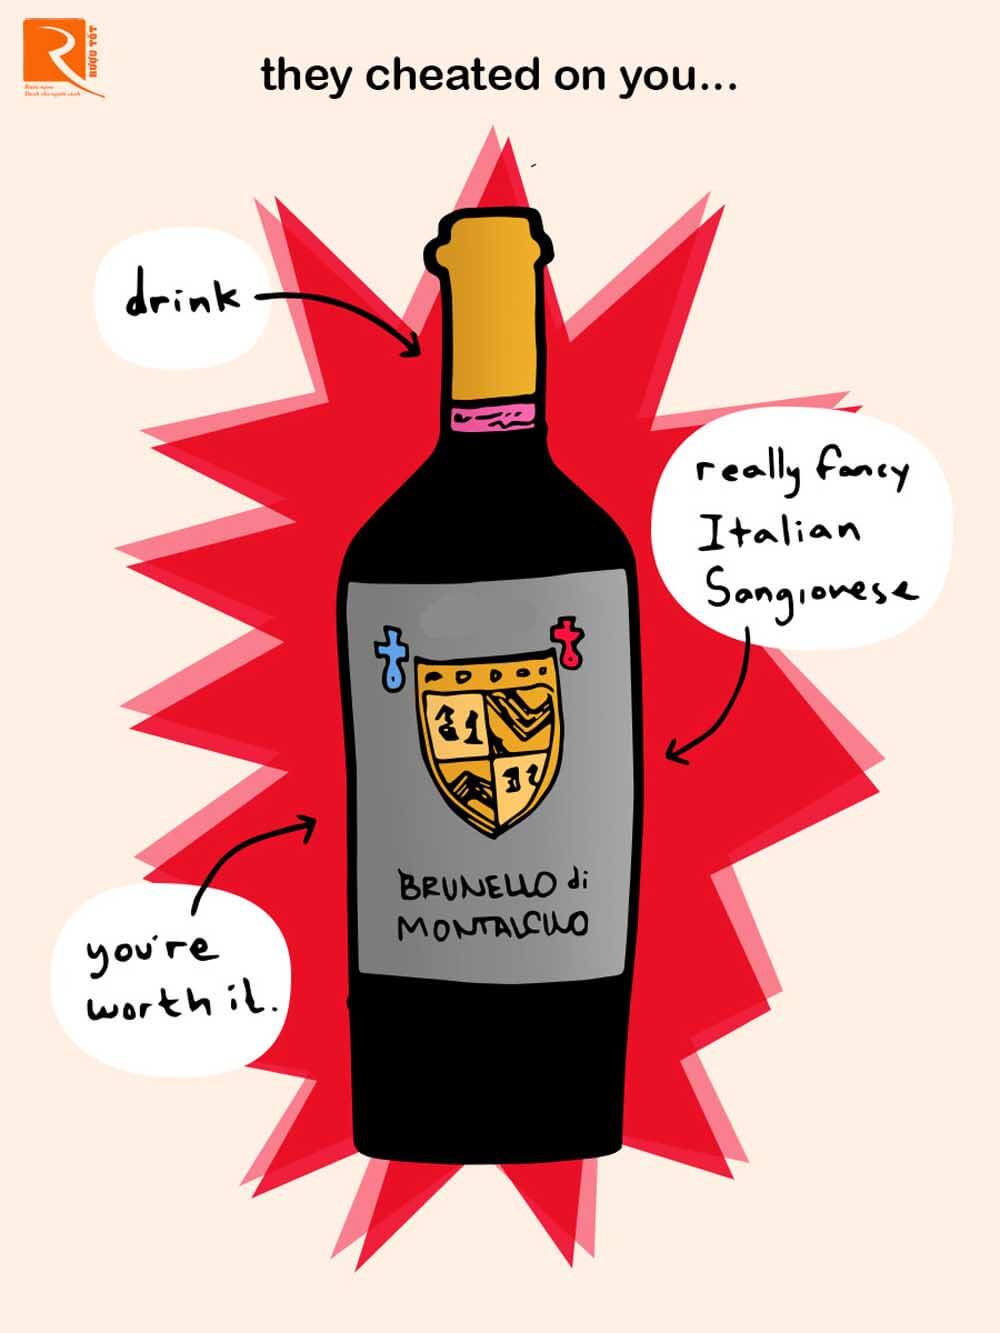 Thử một chai Brunello di Montalcino.